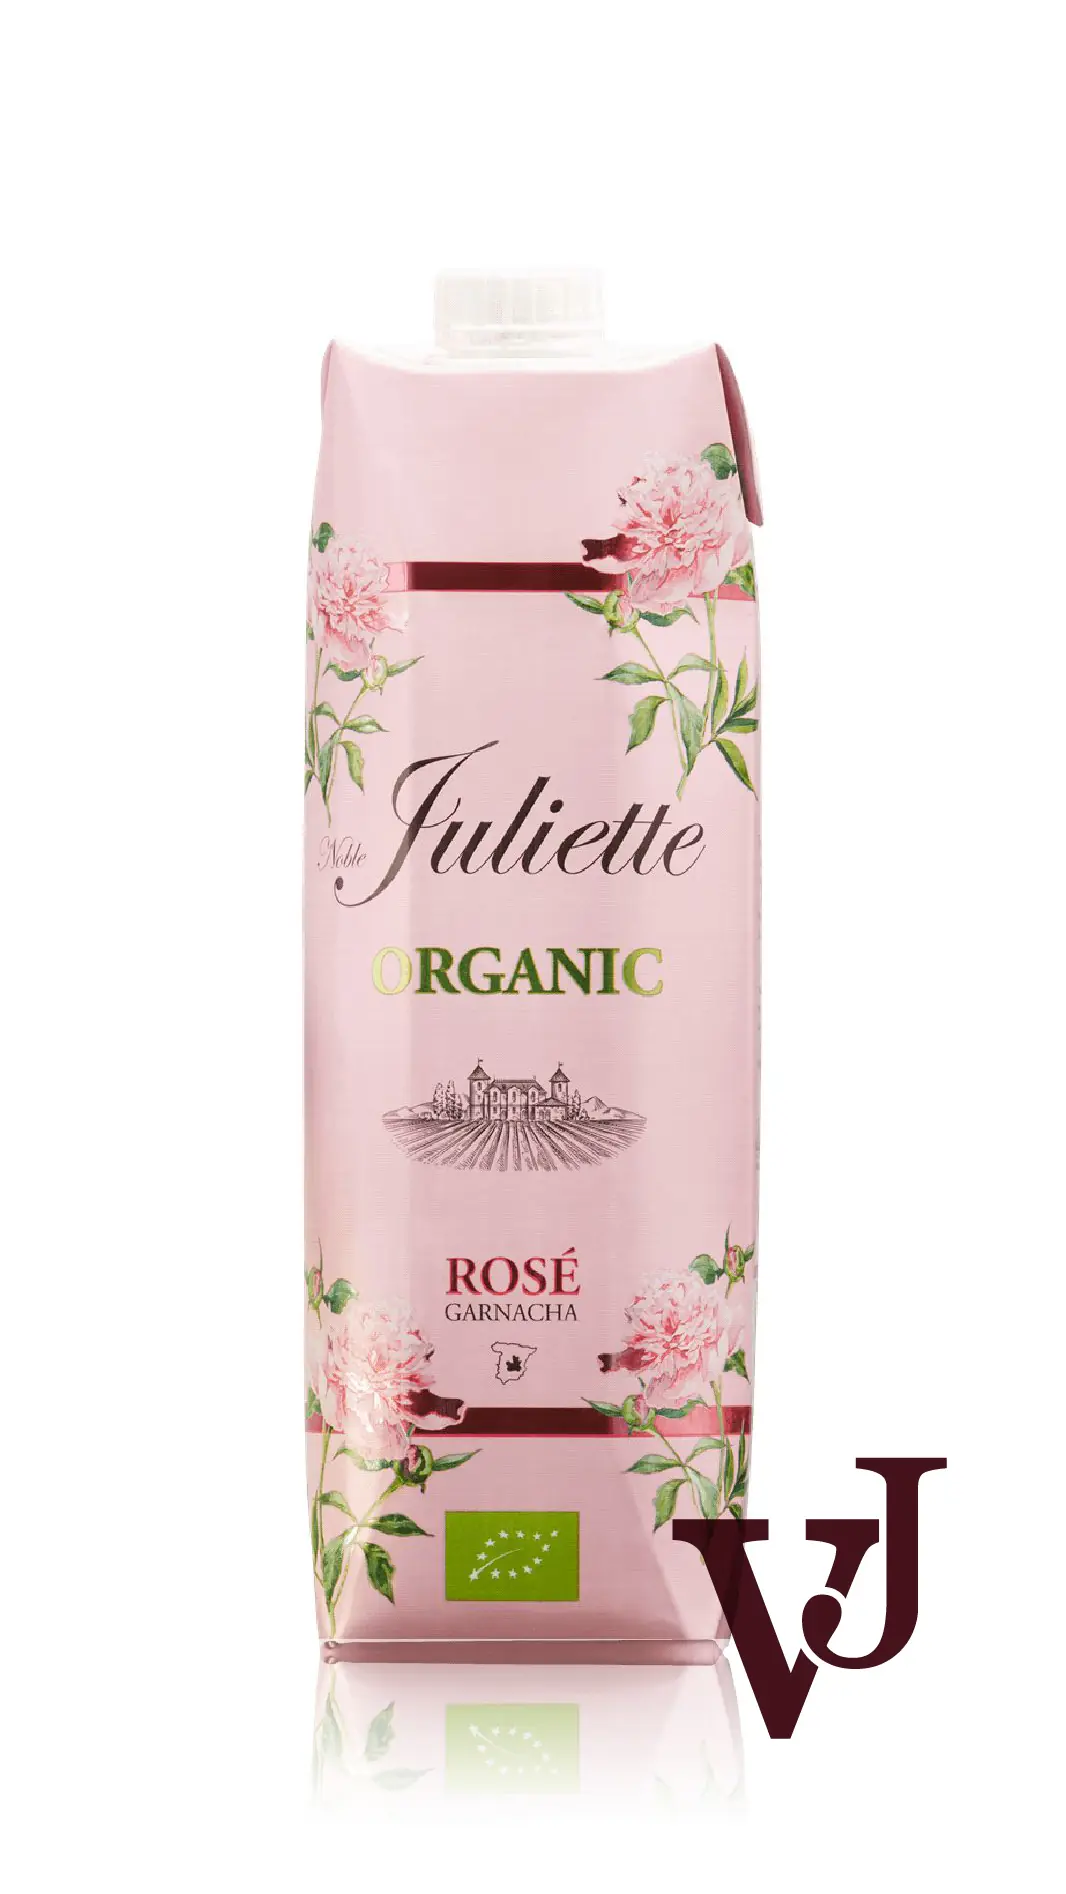 Rosé Vin - Noble Juliette Organic Rosé artikel nummer 238201 från producenten Bodegas Ibañesas De Exportacion S.A. från området Spanien - Vinjournalen.se